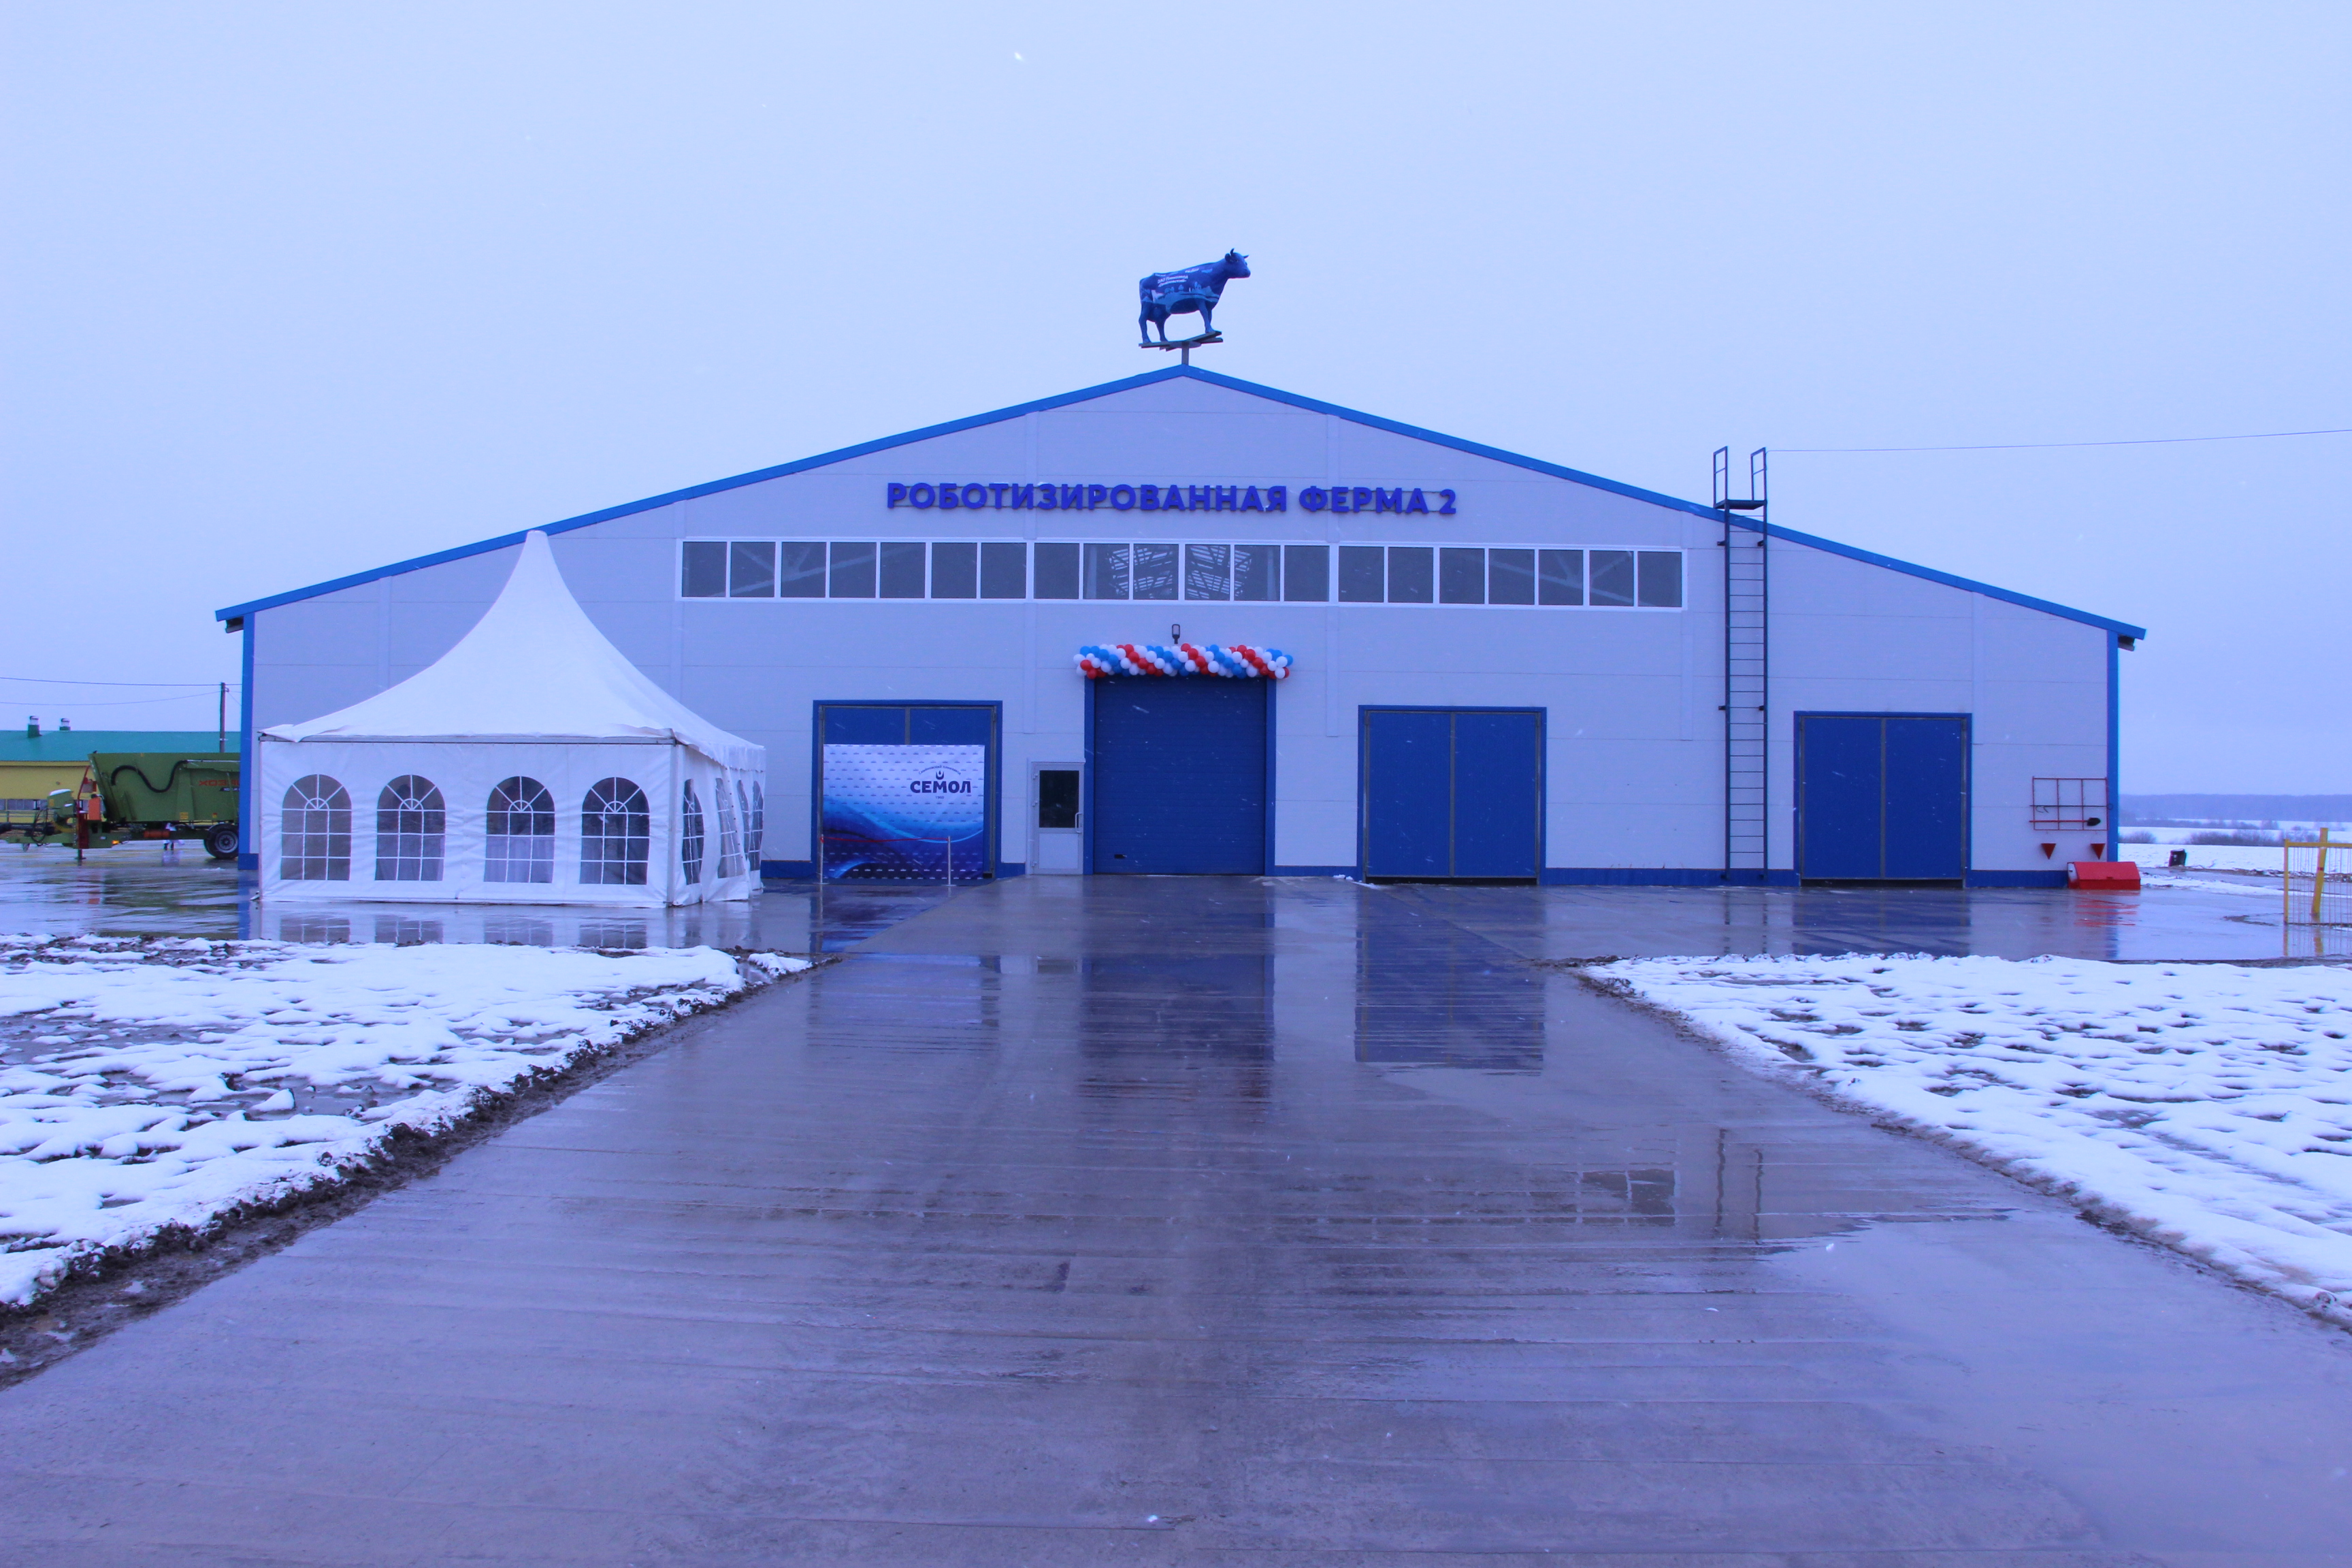 В Республики Марий завершено строительство второй роботизированной фермы на 420 коров